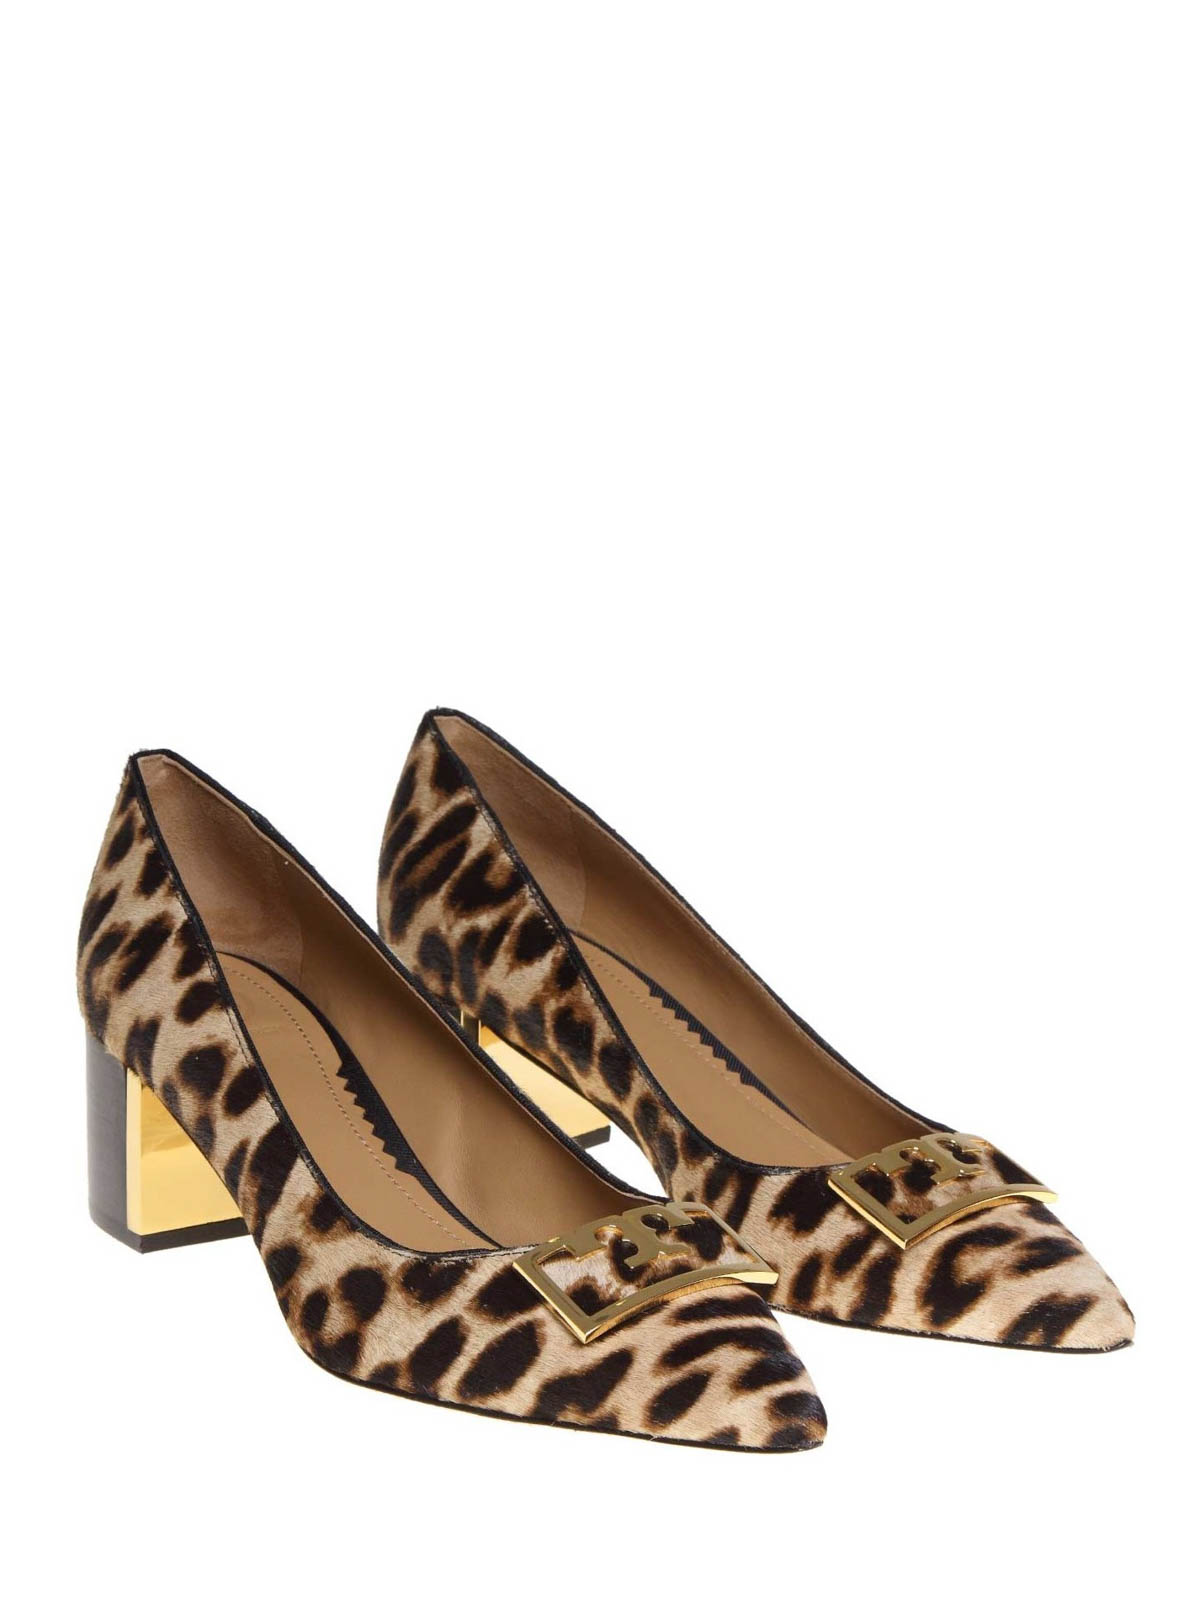 leopard haircalf shoes